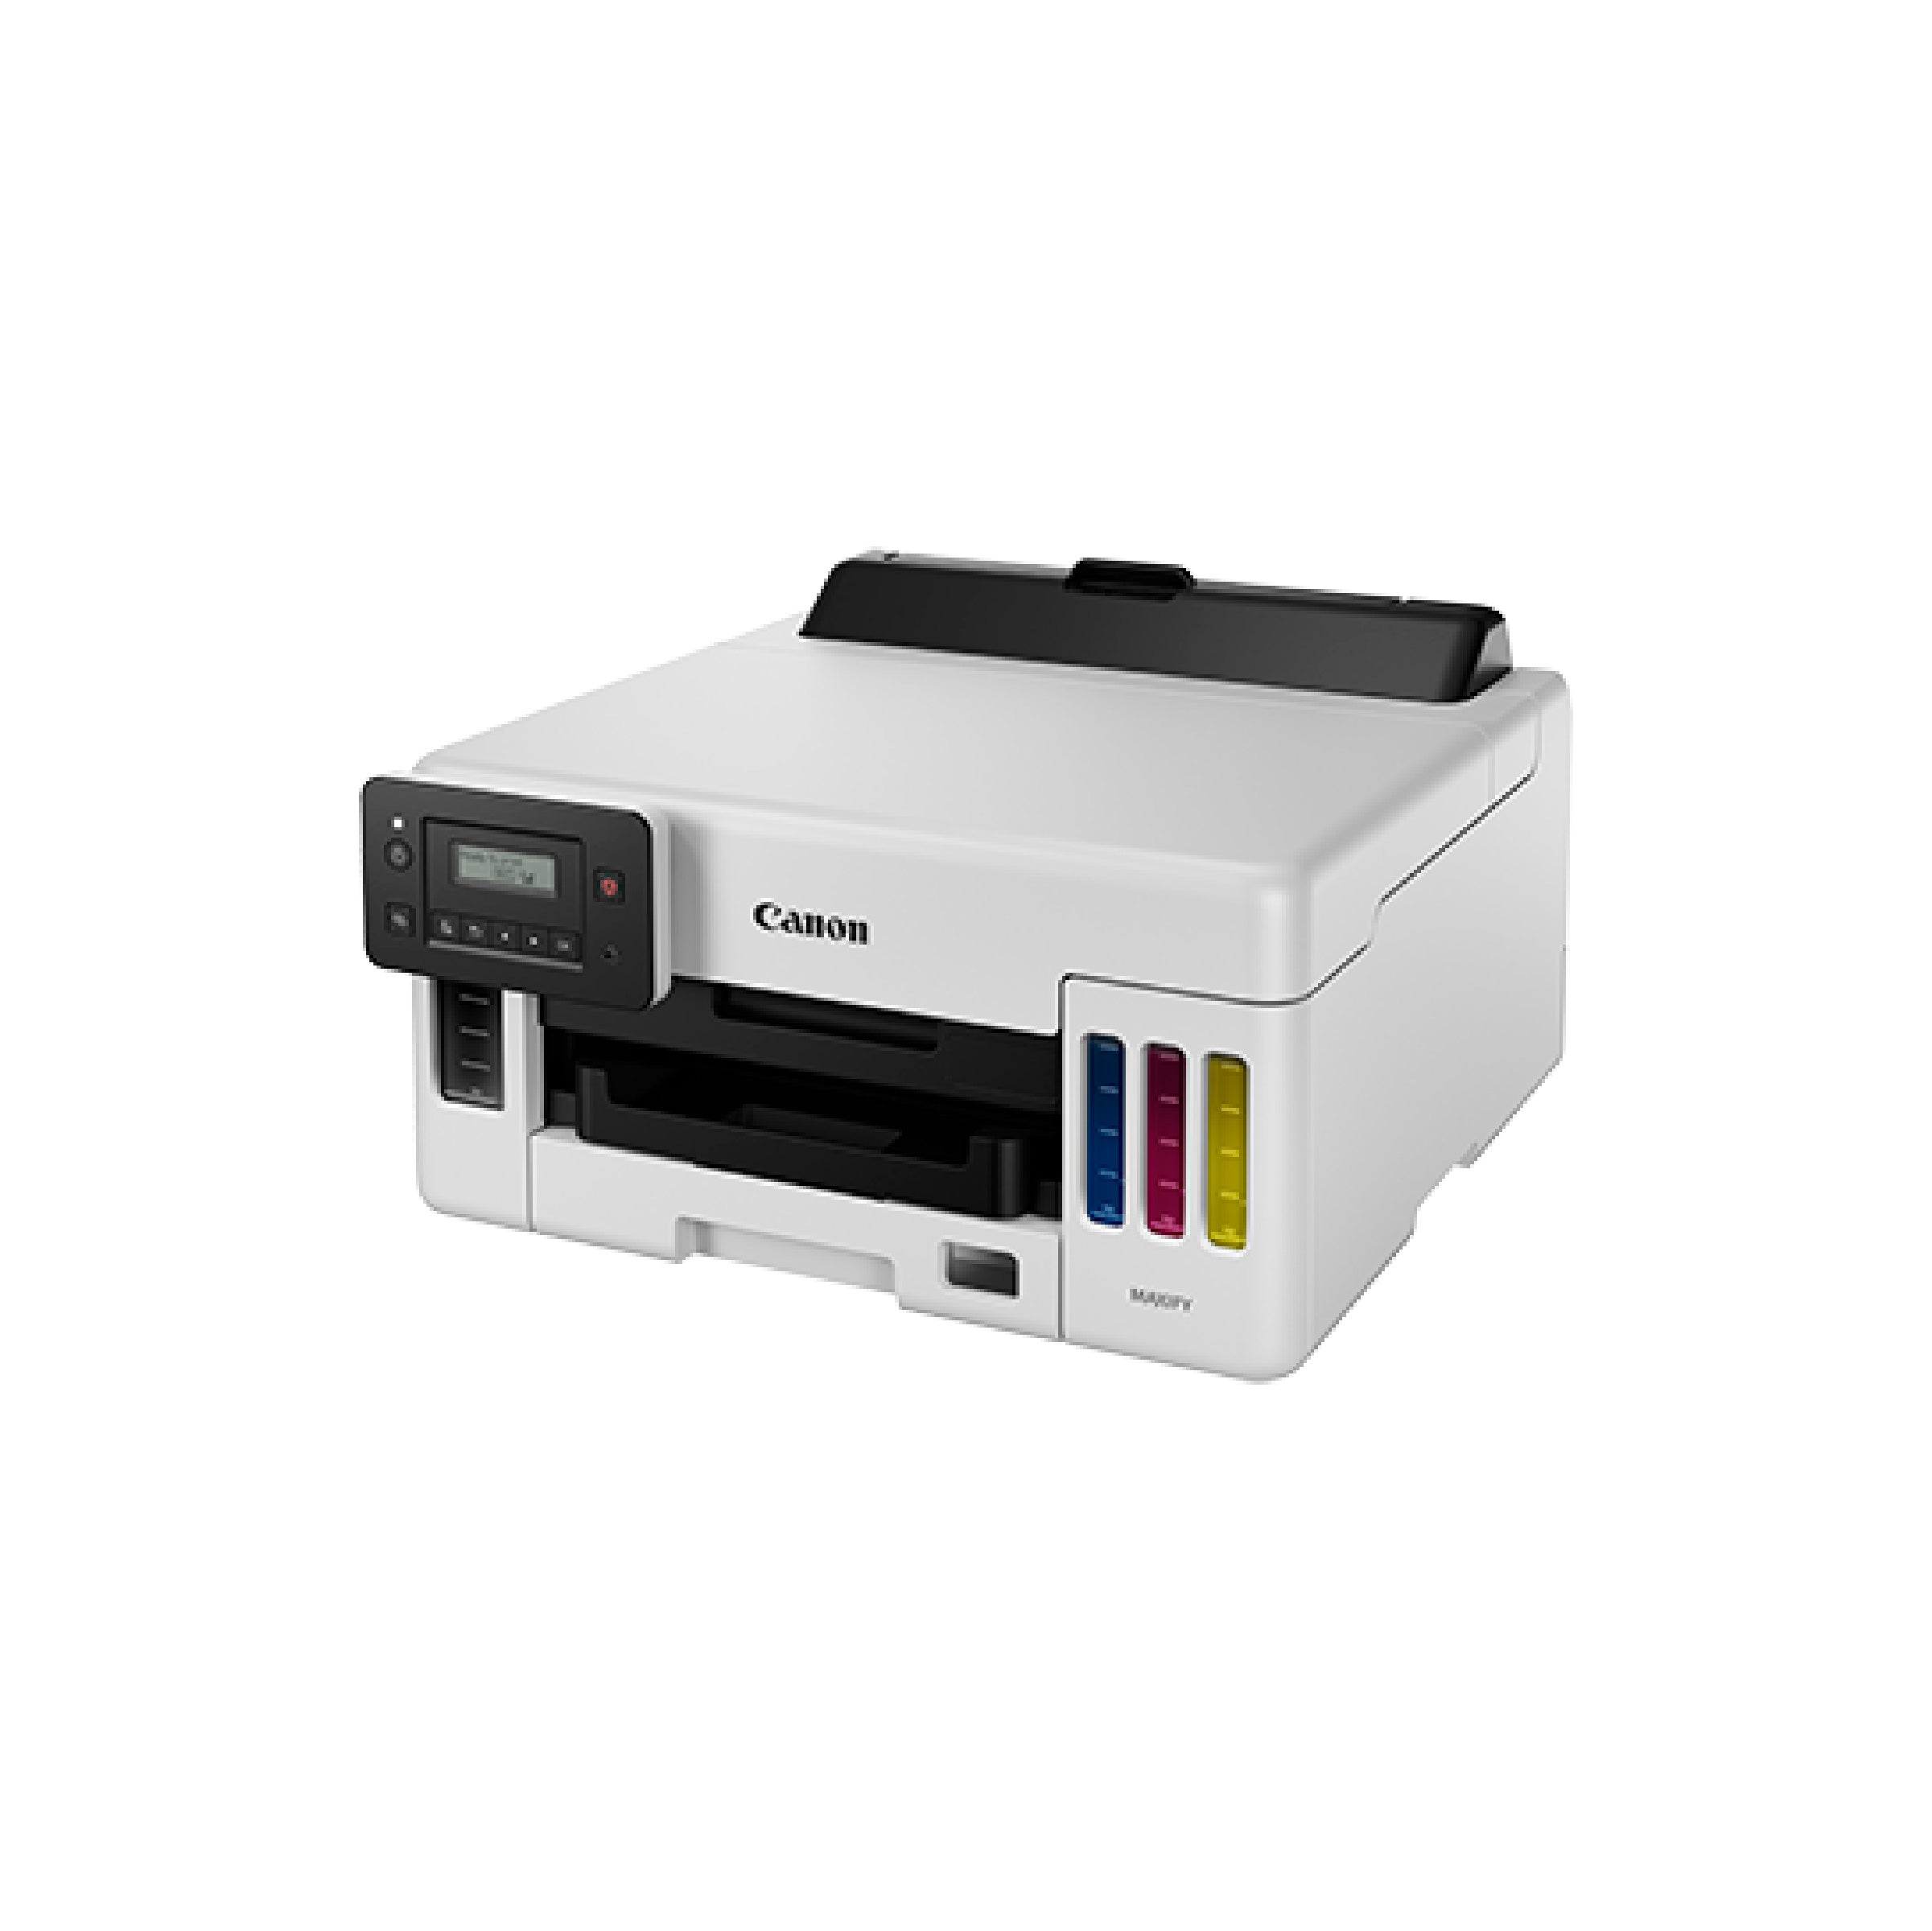 Canon MAXIFY GX5070 Inkjet Printer